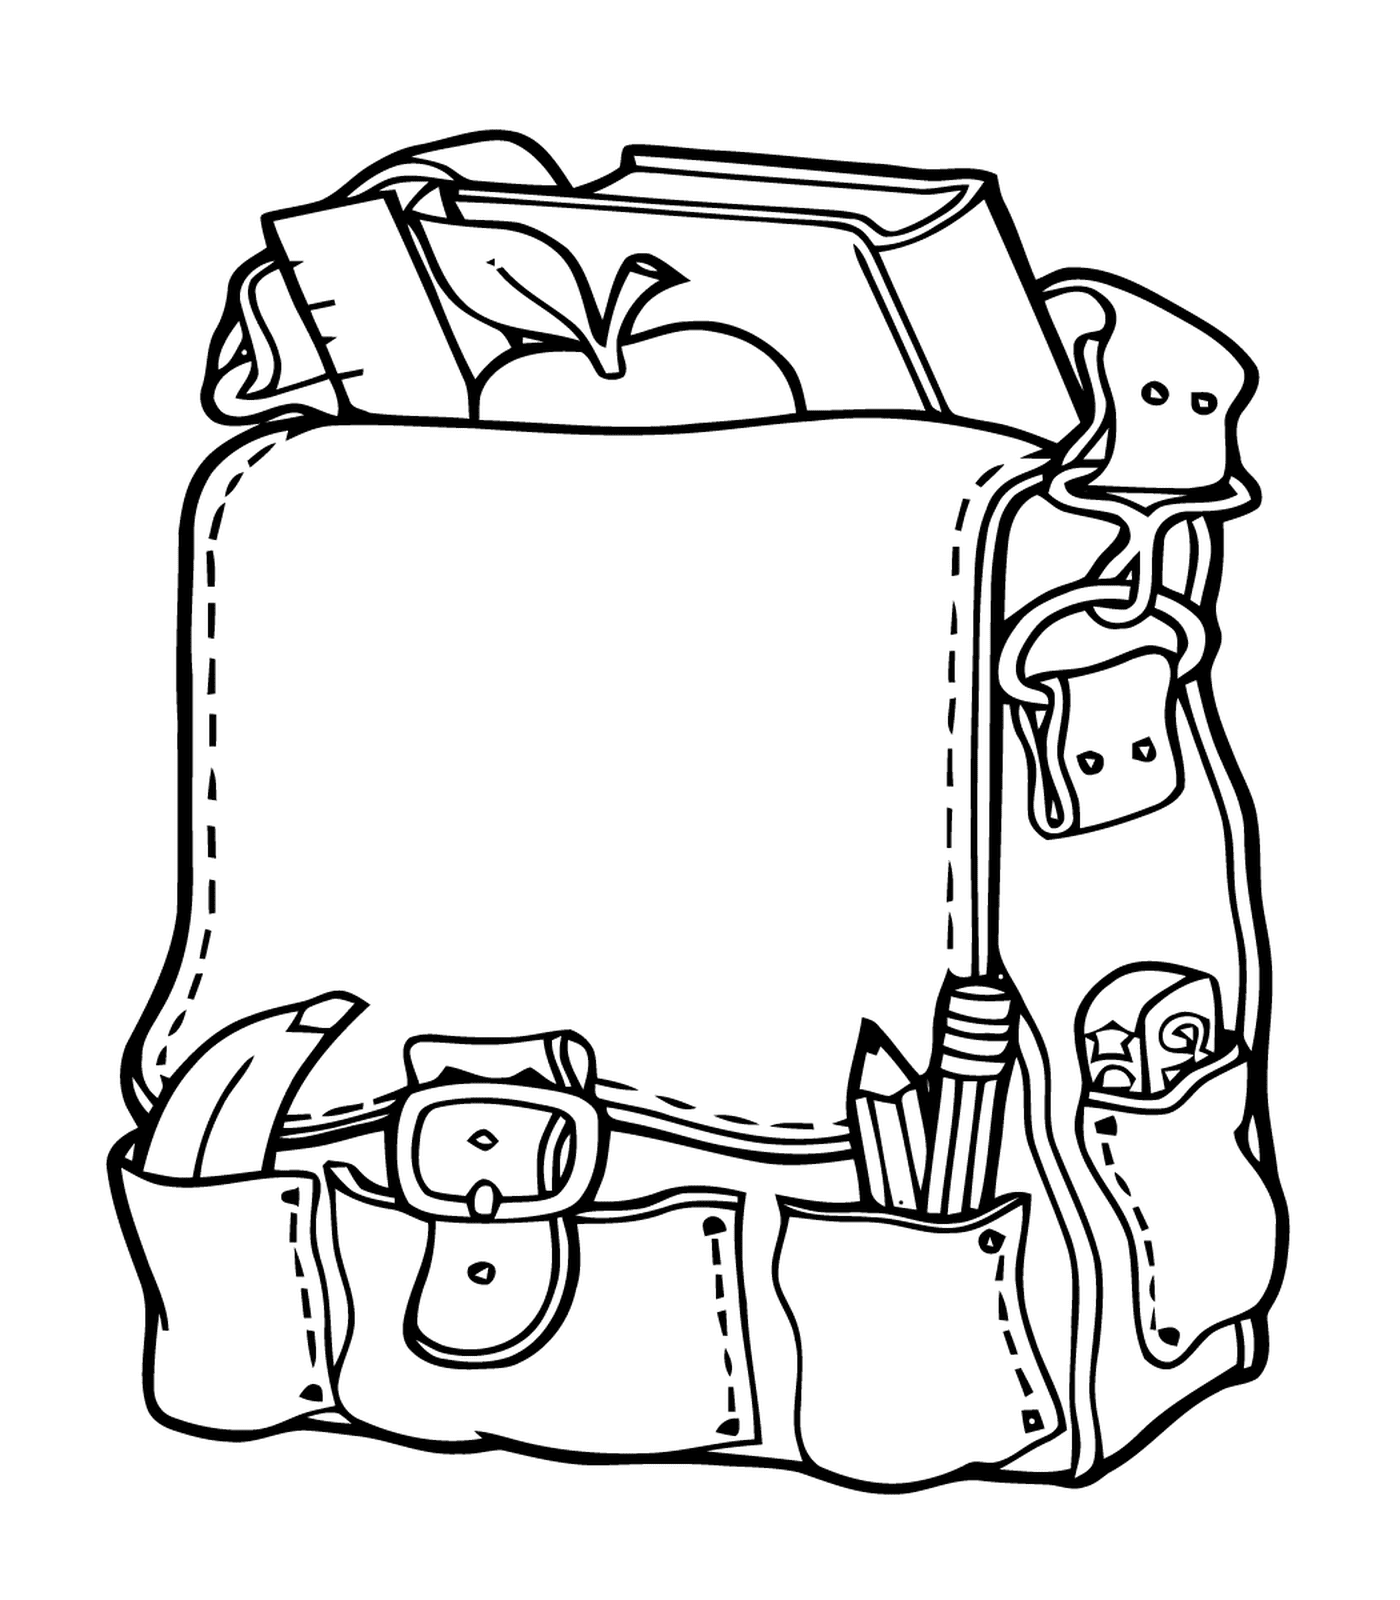  Una mochila abierta llena de útiles escolares 